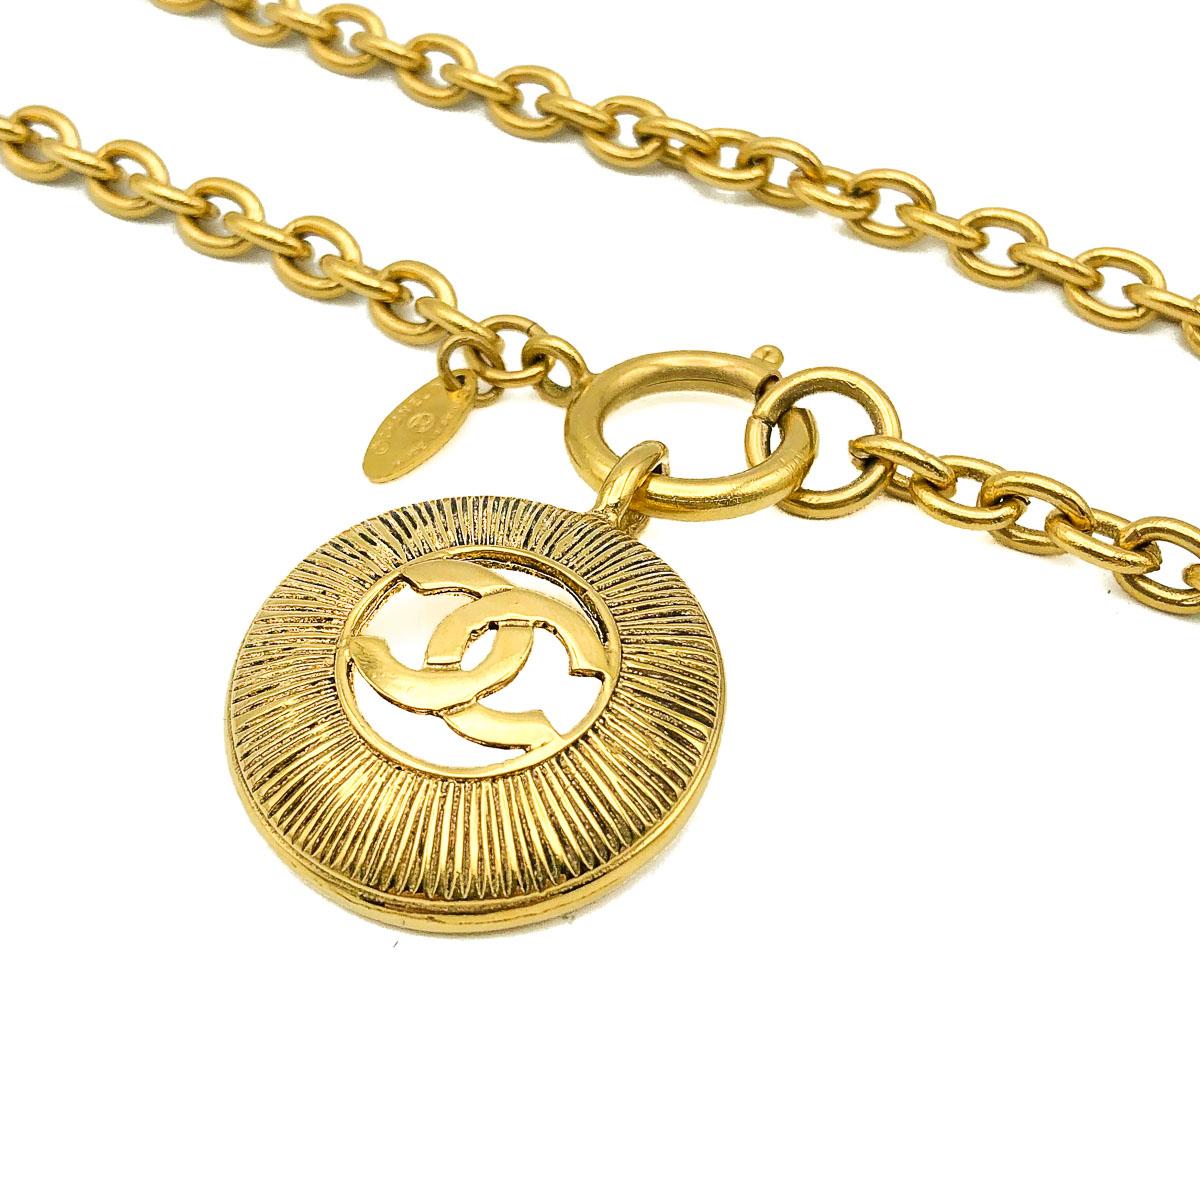 Women's Vintage Chanel Gold Sunburst CC Logo Chain Necklace 1980s Iconic